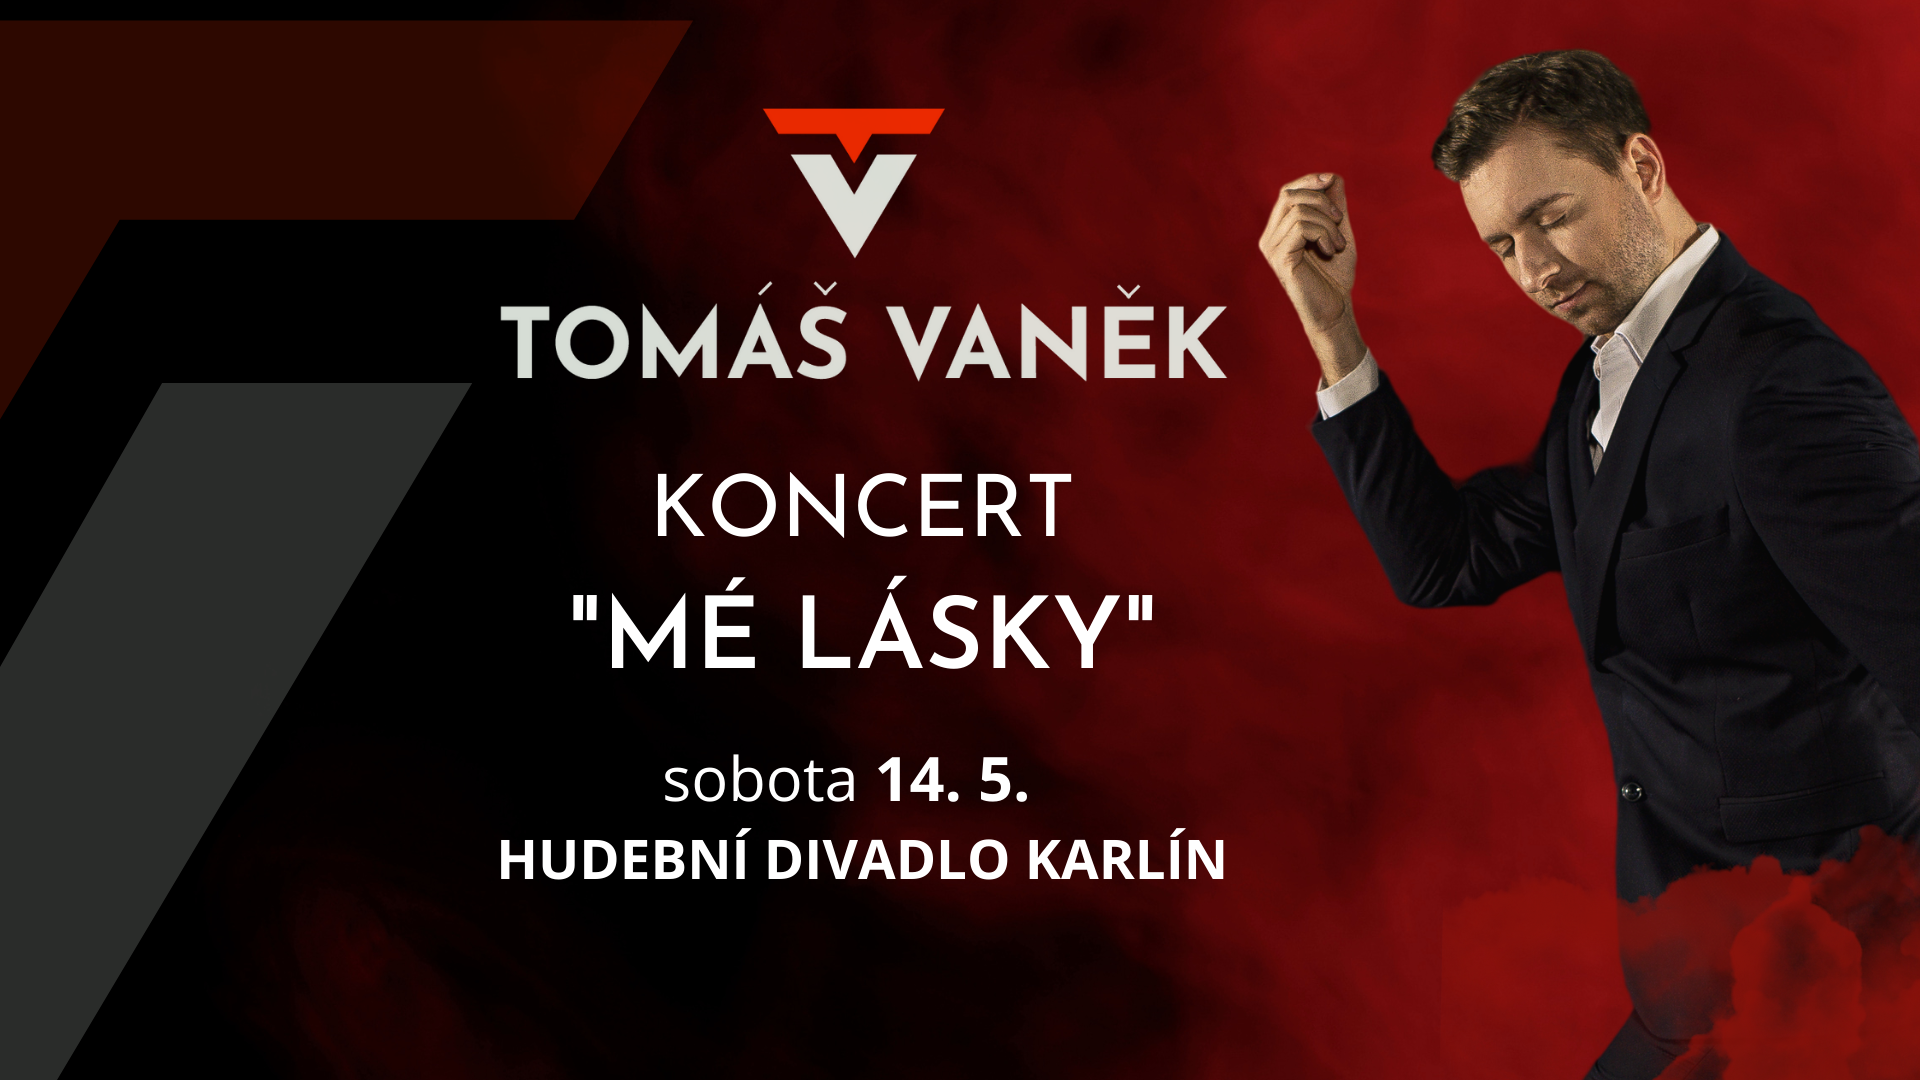 Tomáš Vaněk, herec, zpěvák a producent